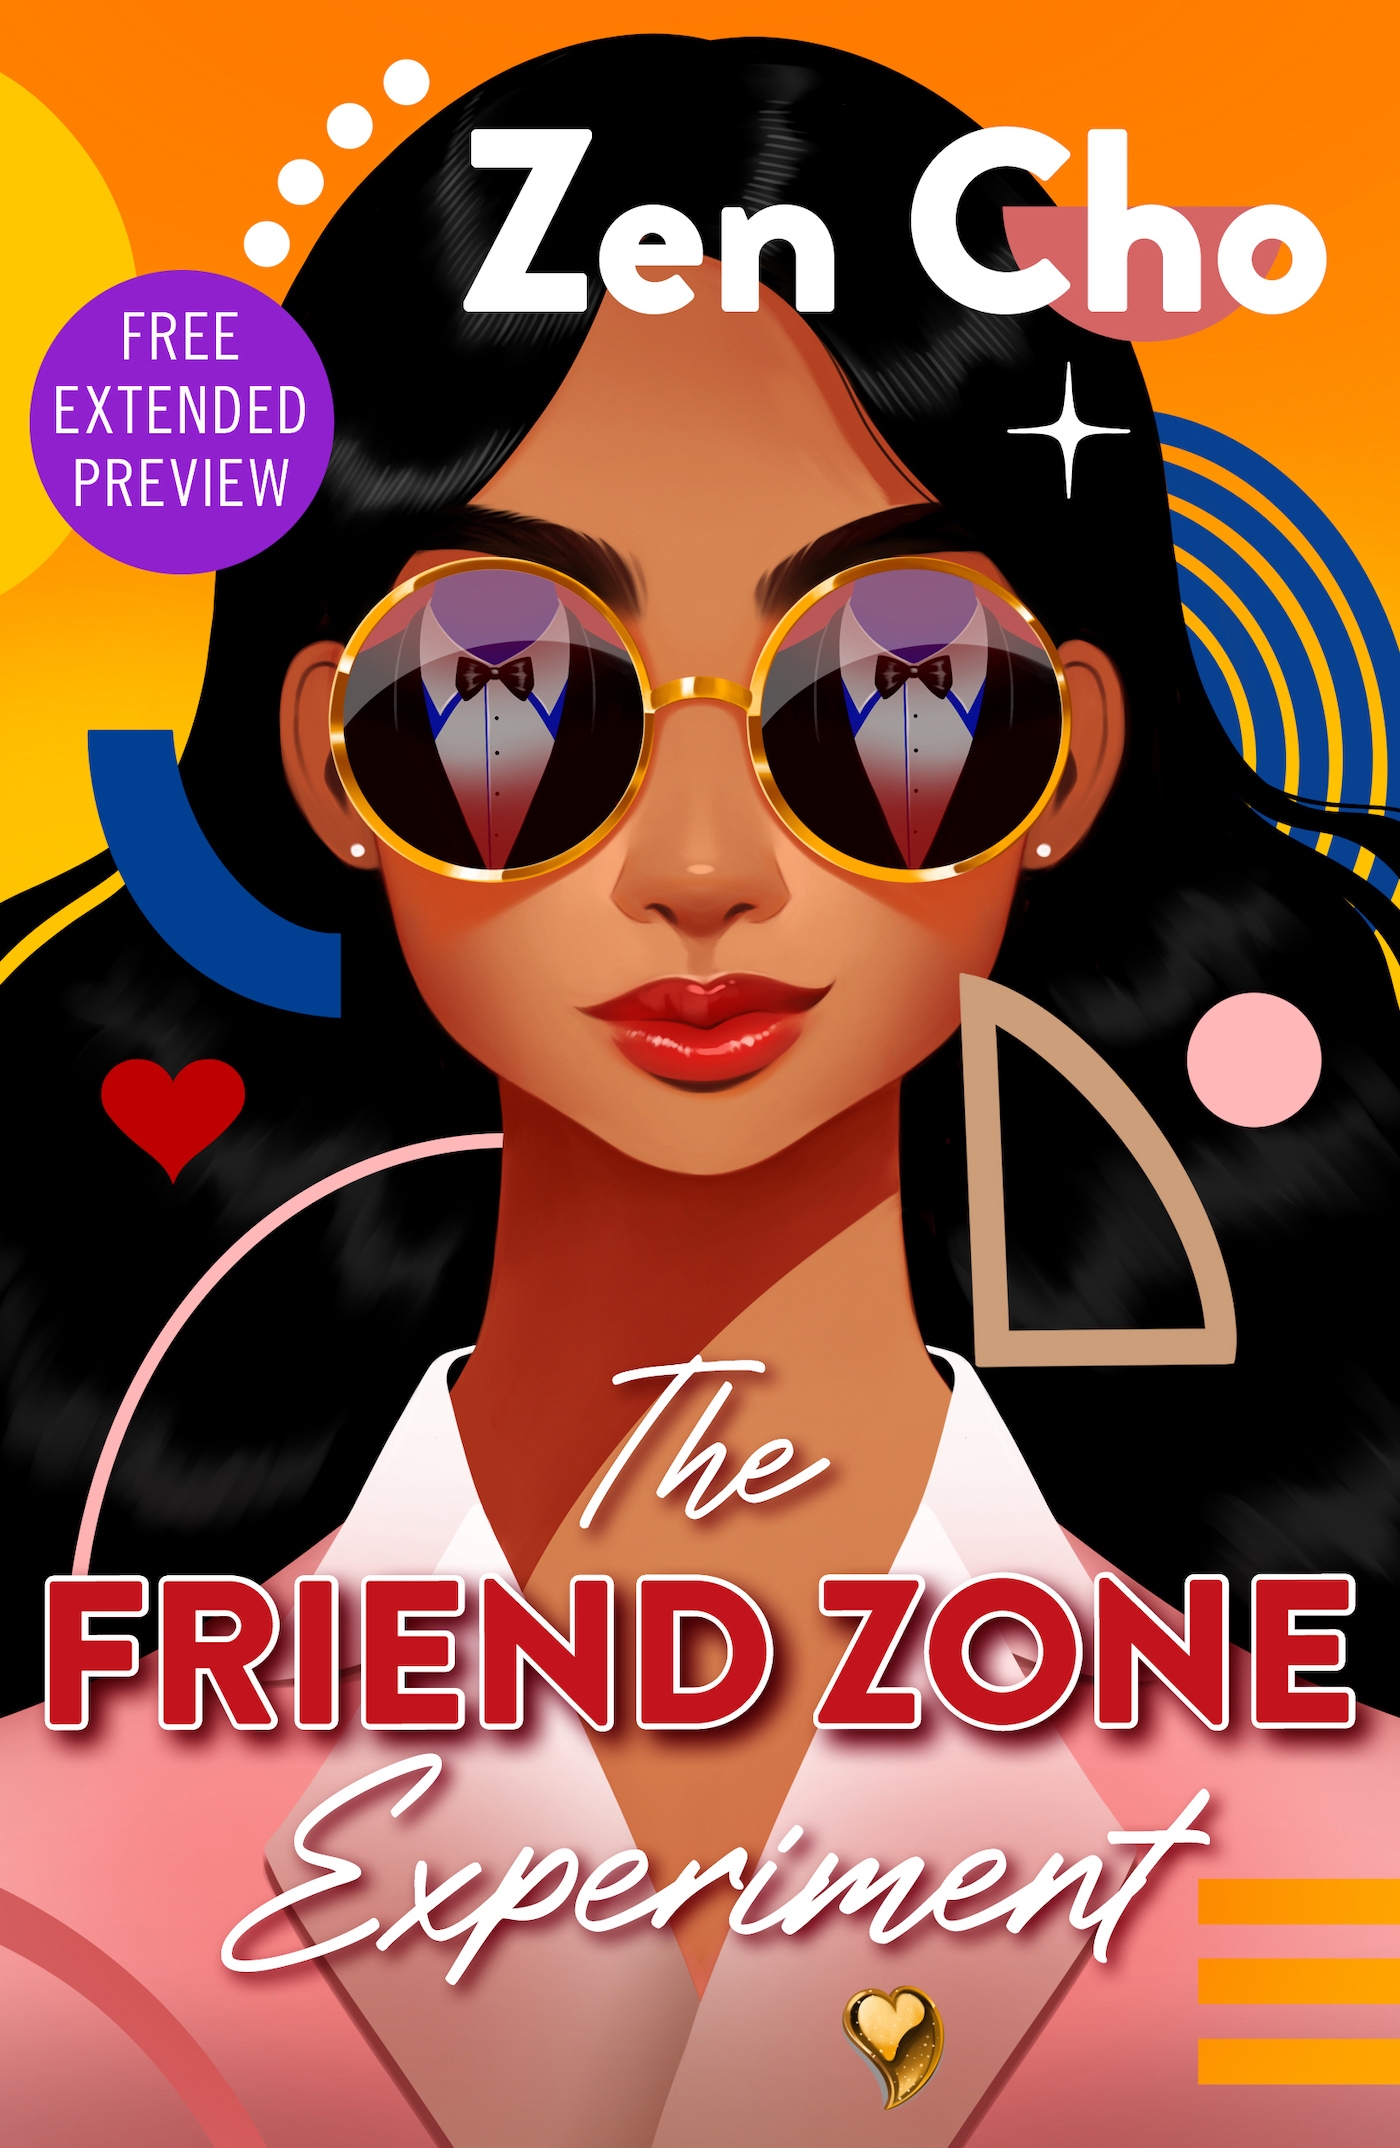 Sneak Peek for The Friend Zone Experiment by Zen Cho